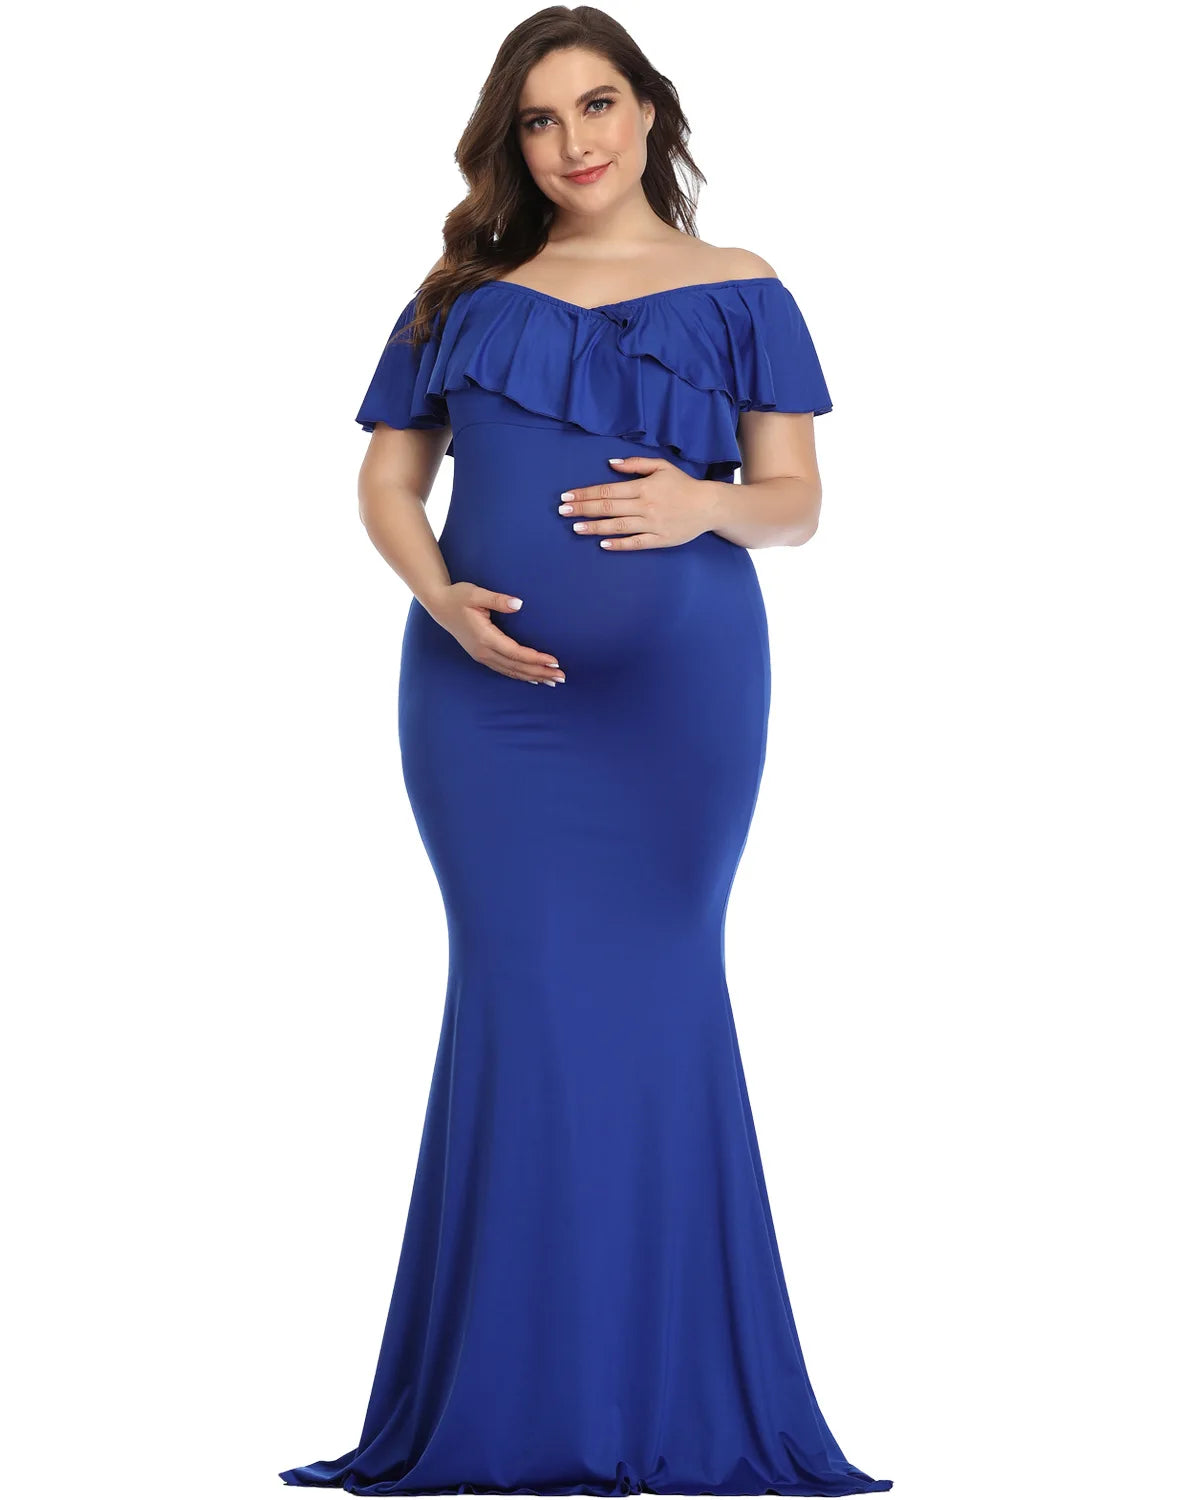 Plus Size Bohemian Maternity Photoshoot Dress by Baby Minaj Cruz